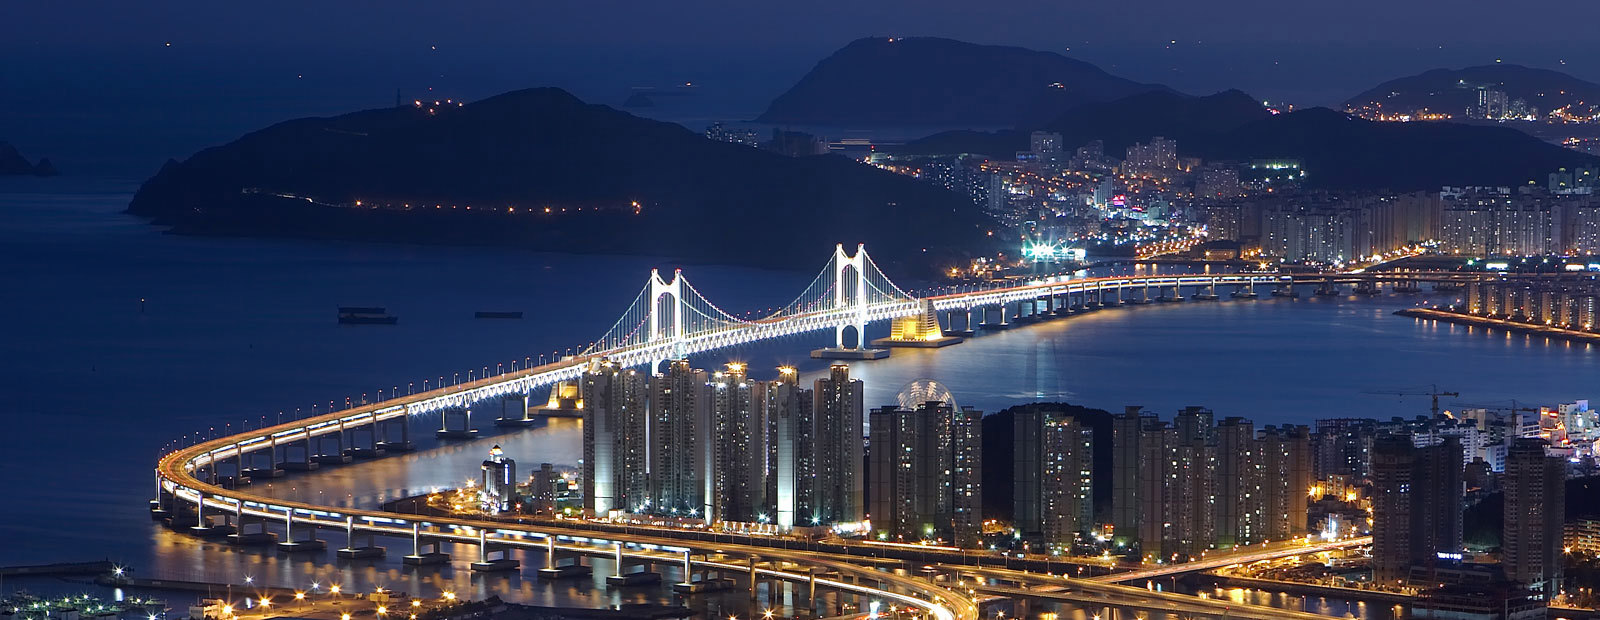 Upplyst skyline i Busan